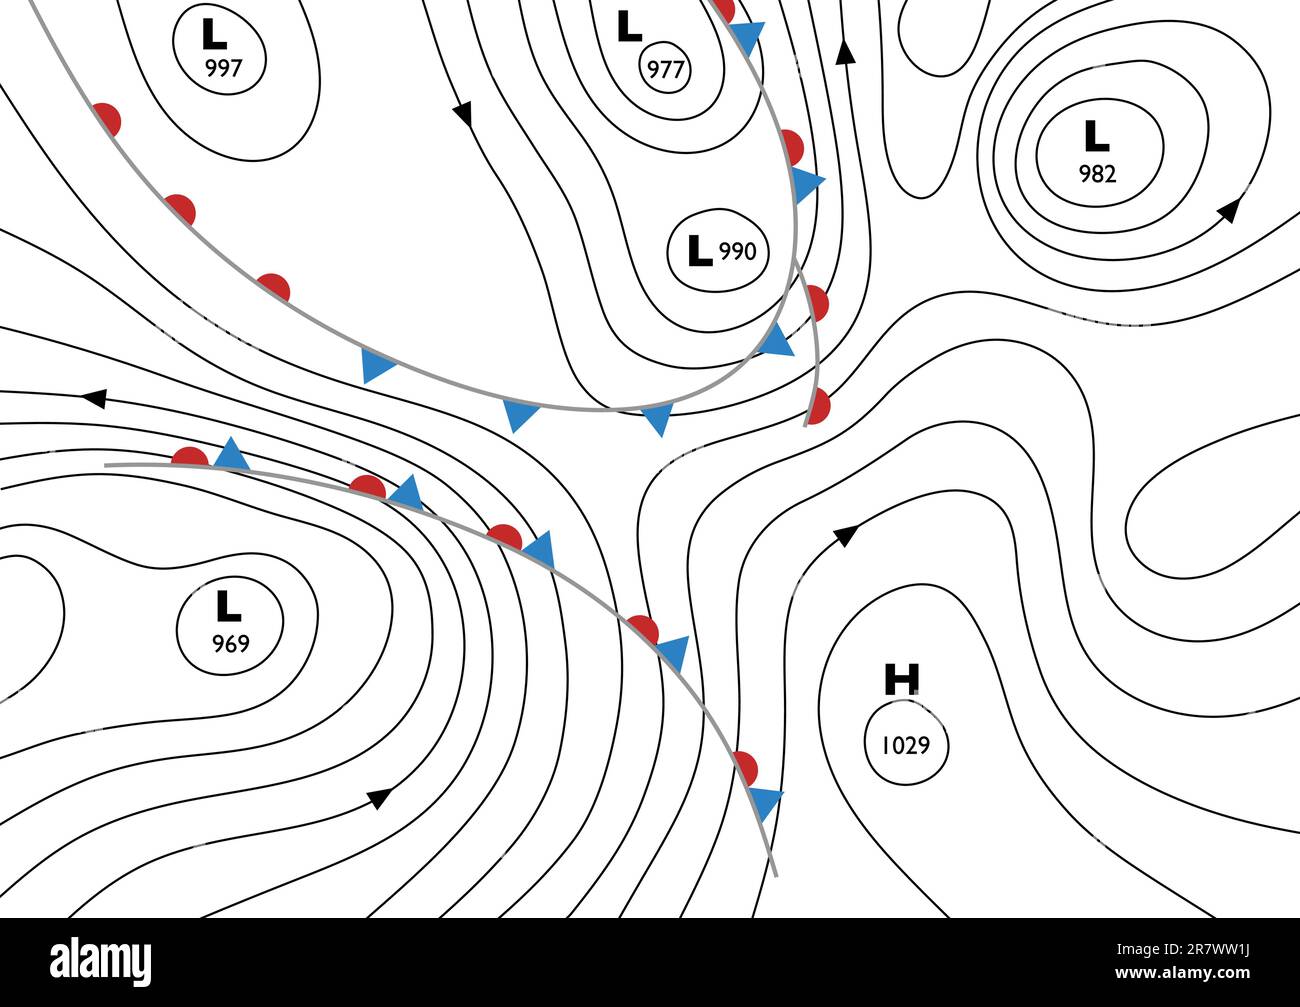 Bearbeitbares Vektor-Illustration einer generischen Wetterkarte mit Isobaren und Wetterfronten Stock Vektor